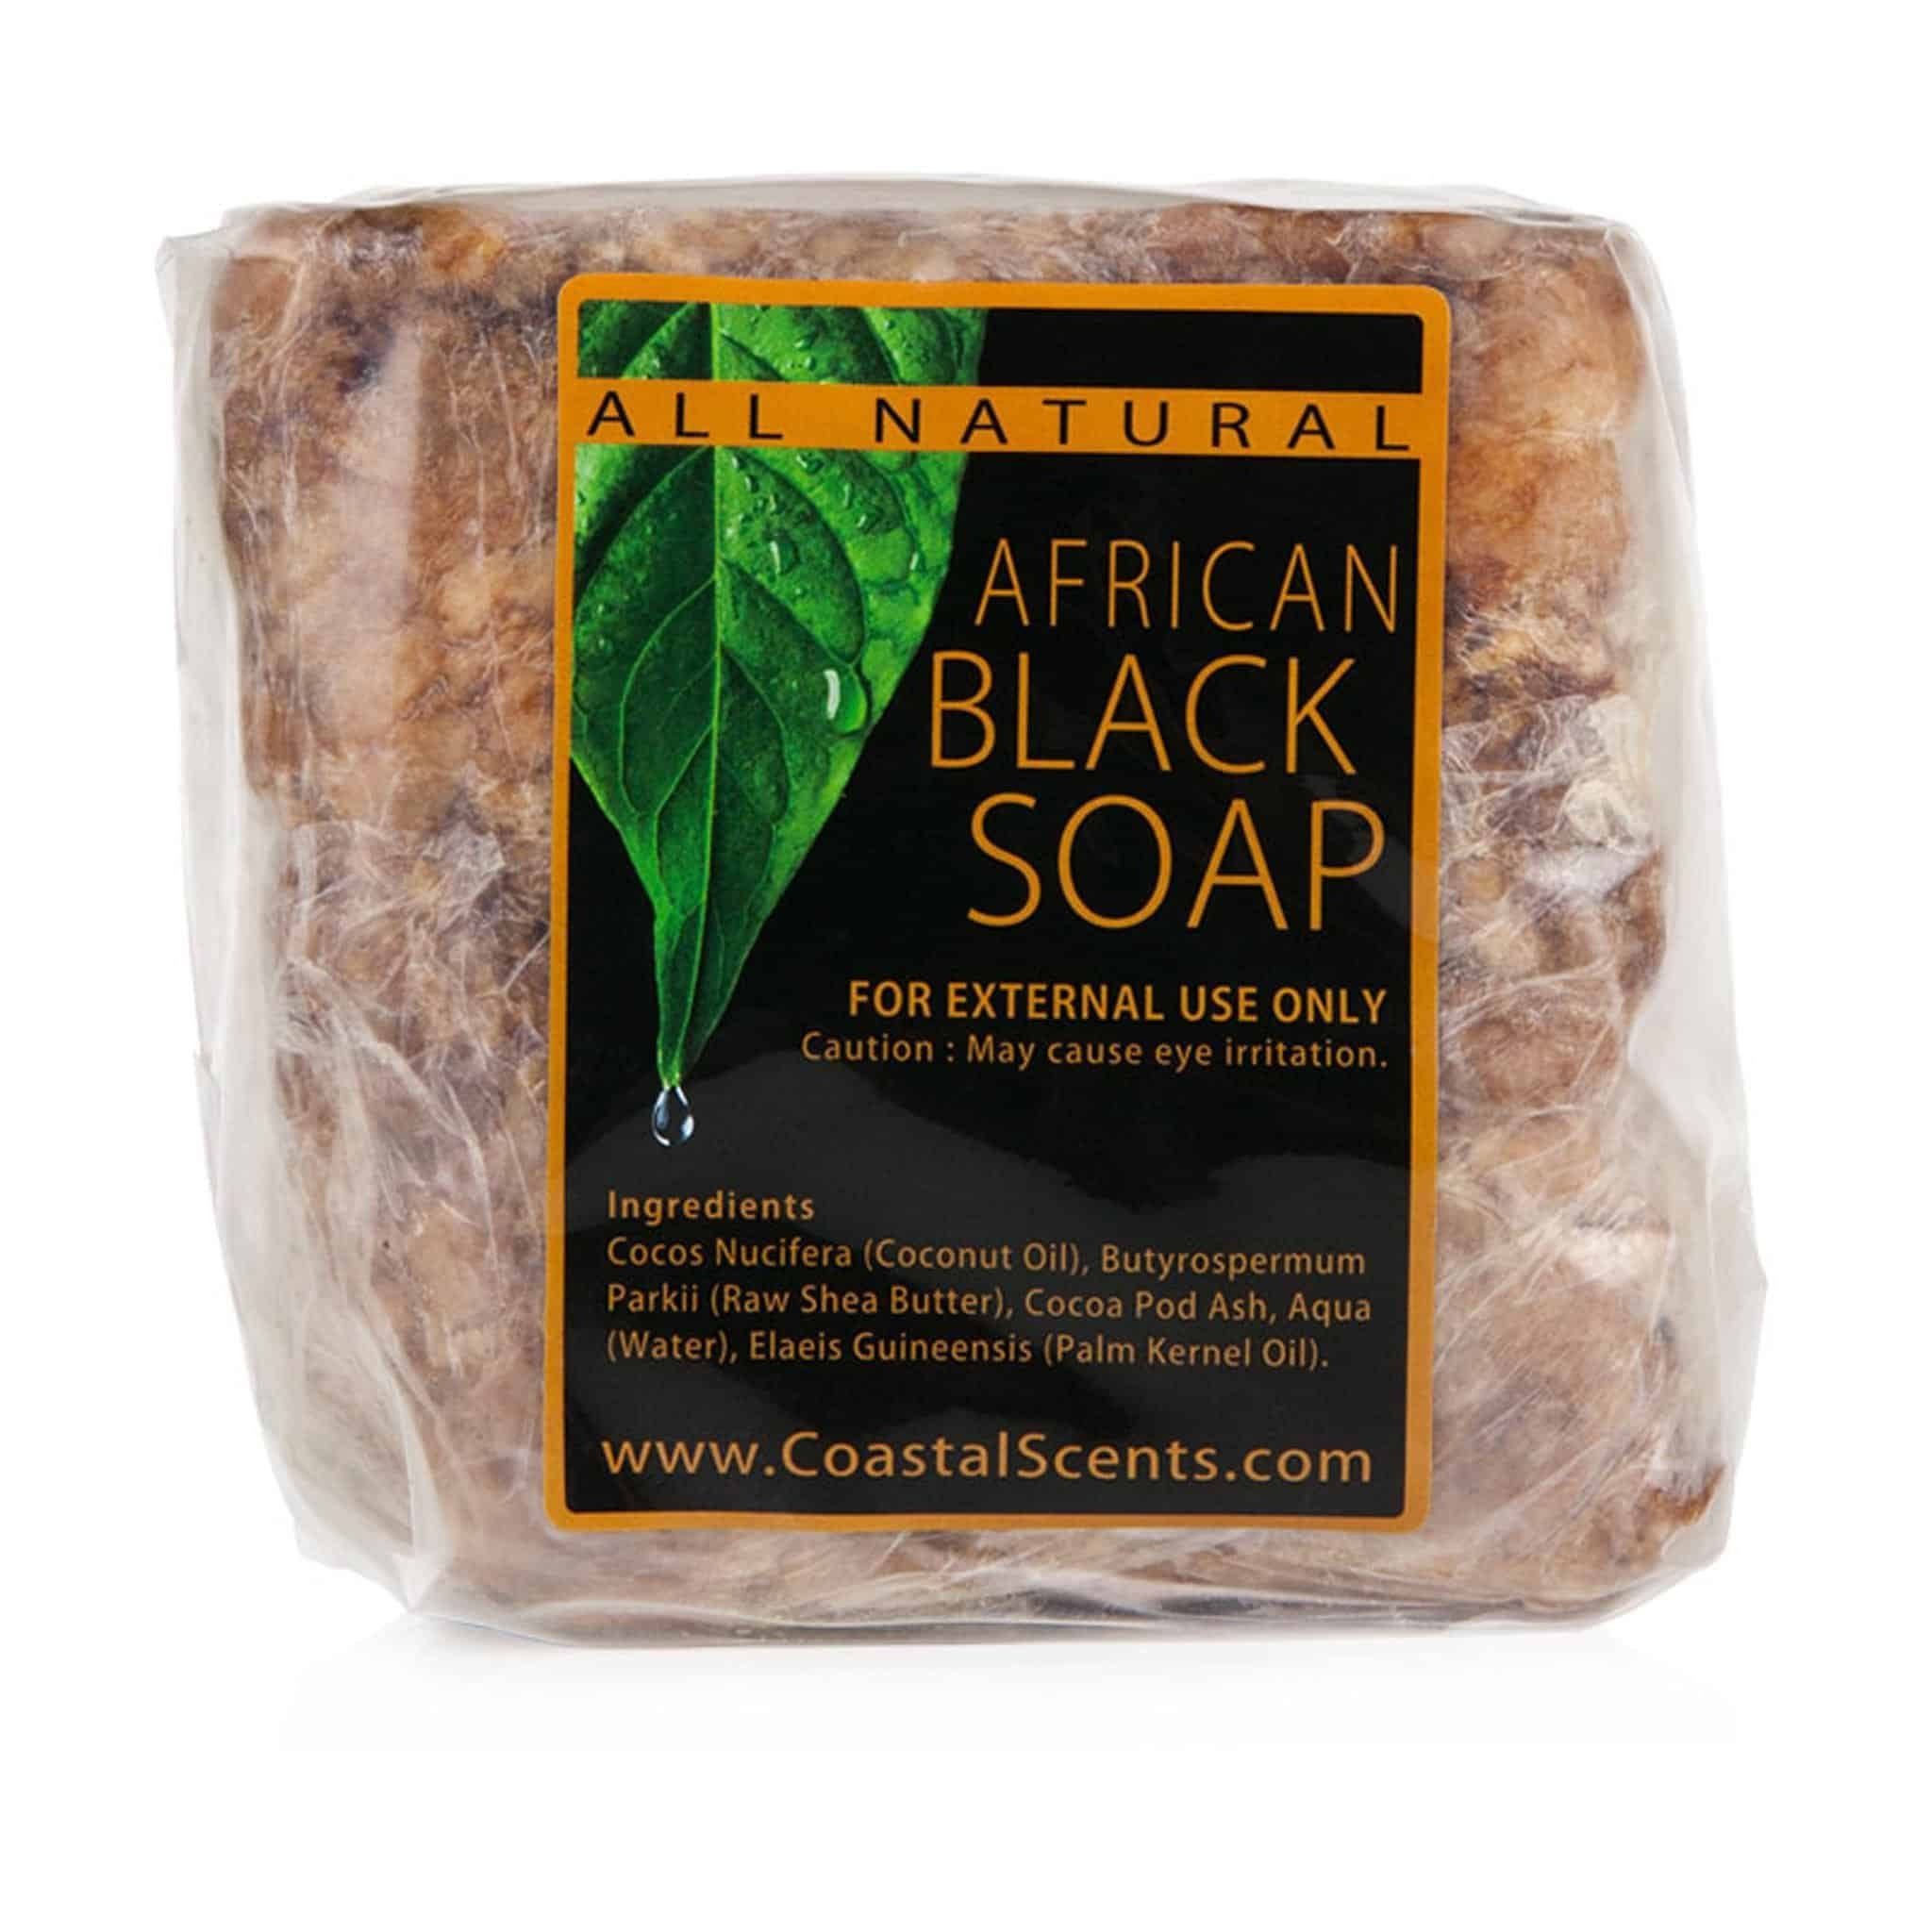 Black soap có tốt không, có tác dụng gì?